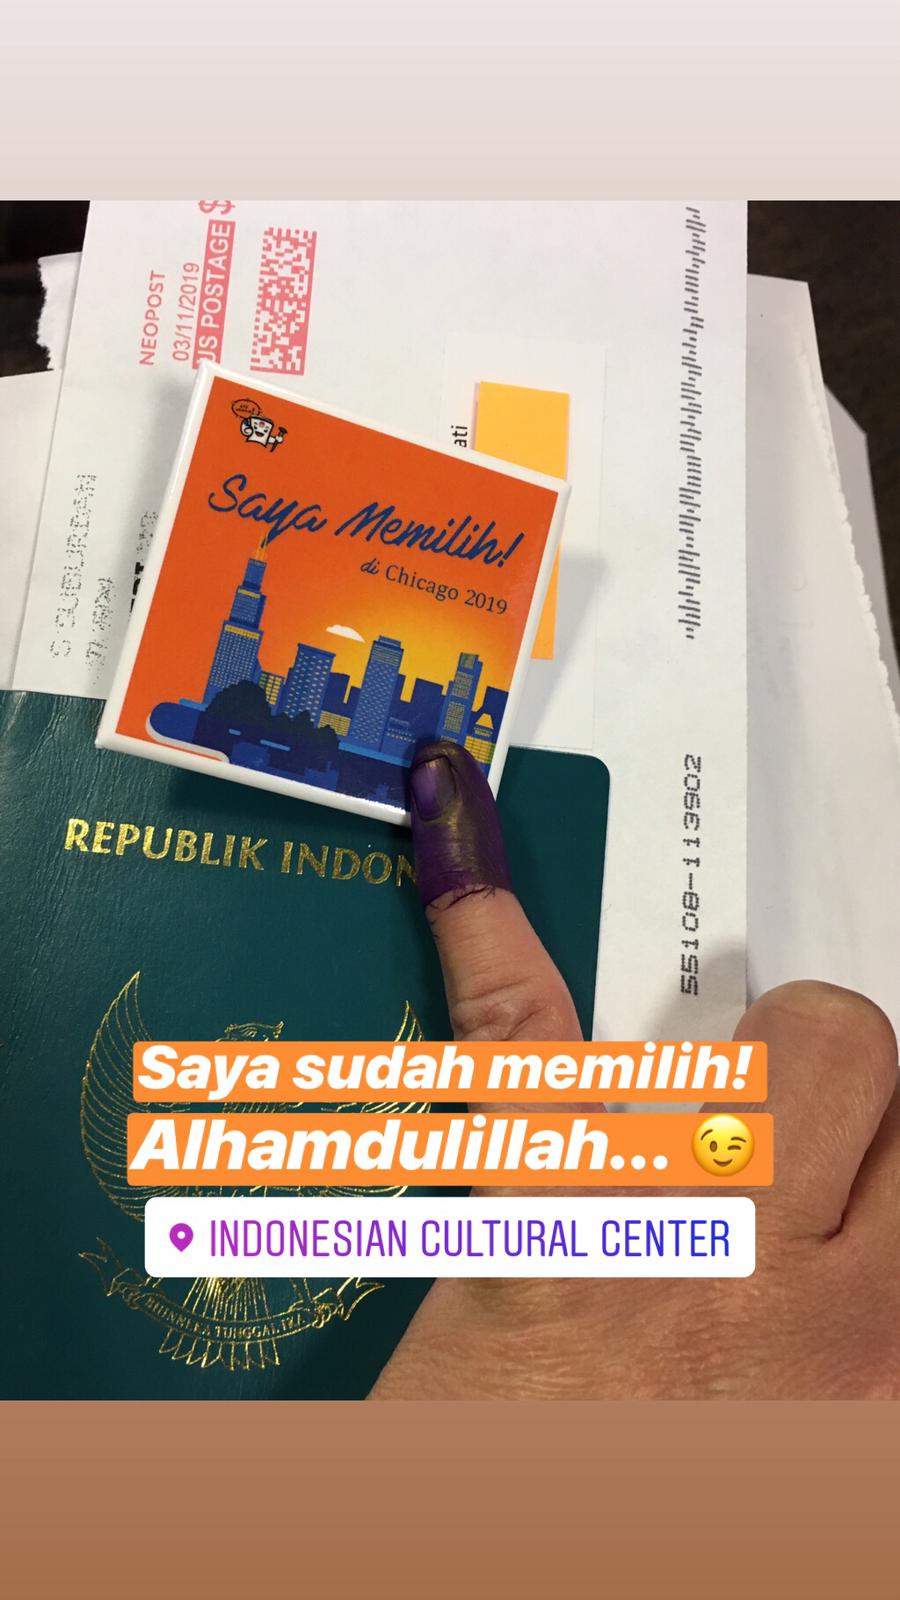 I VOTED!